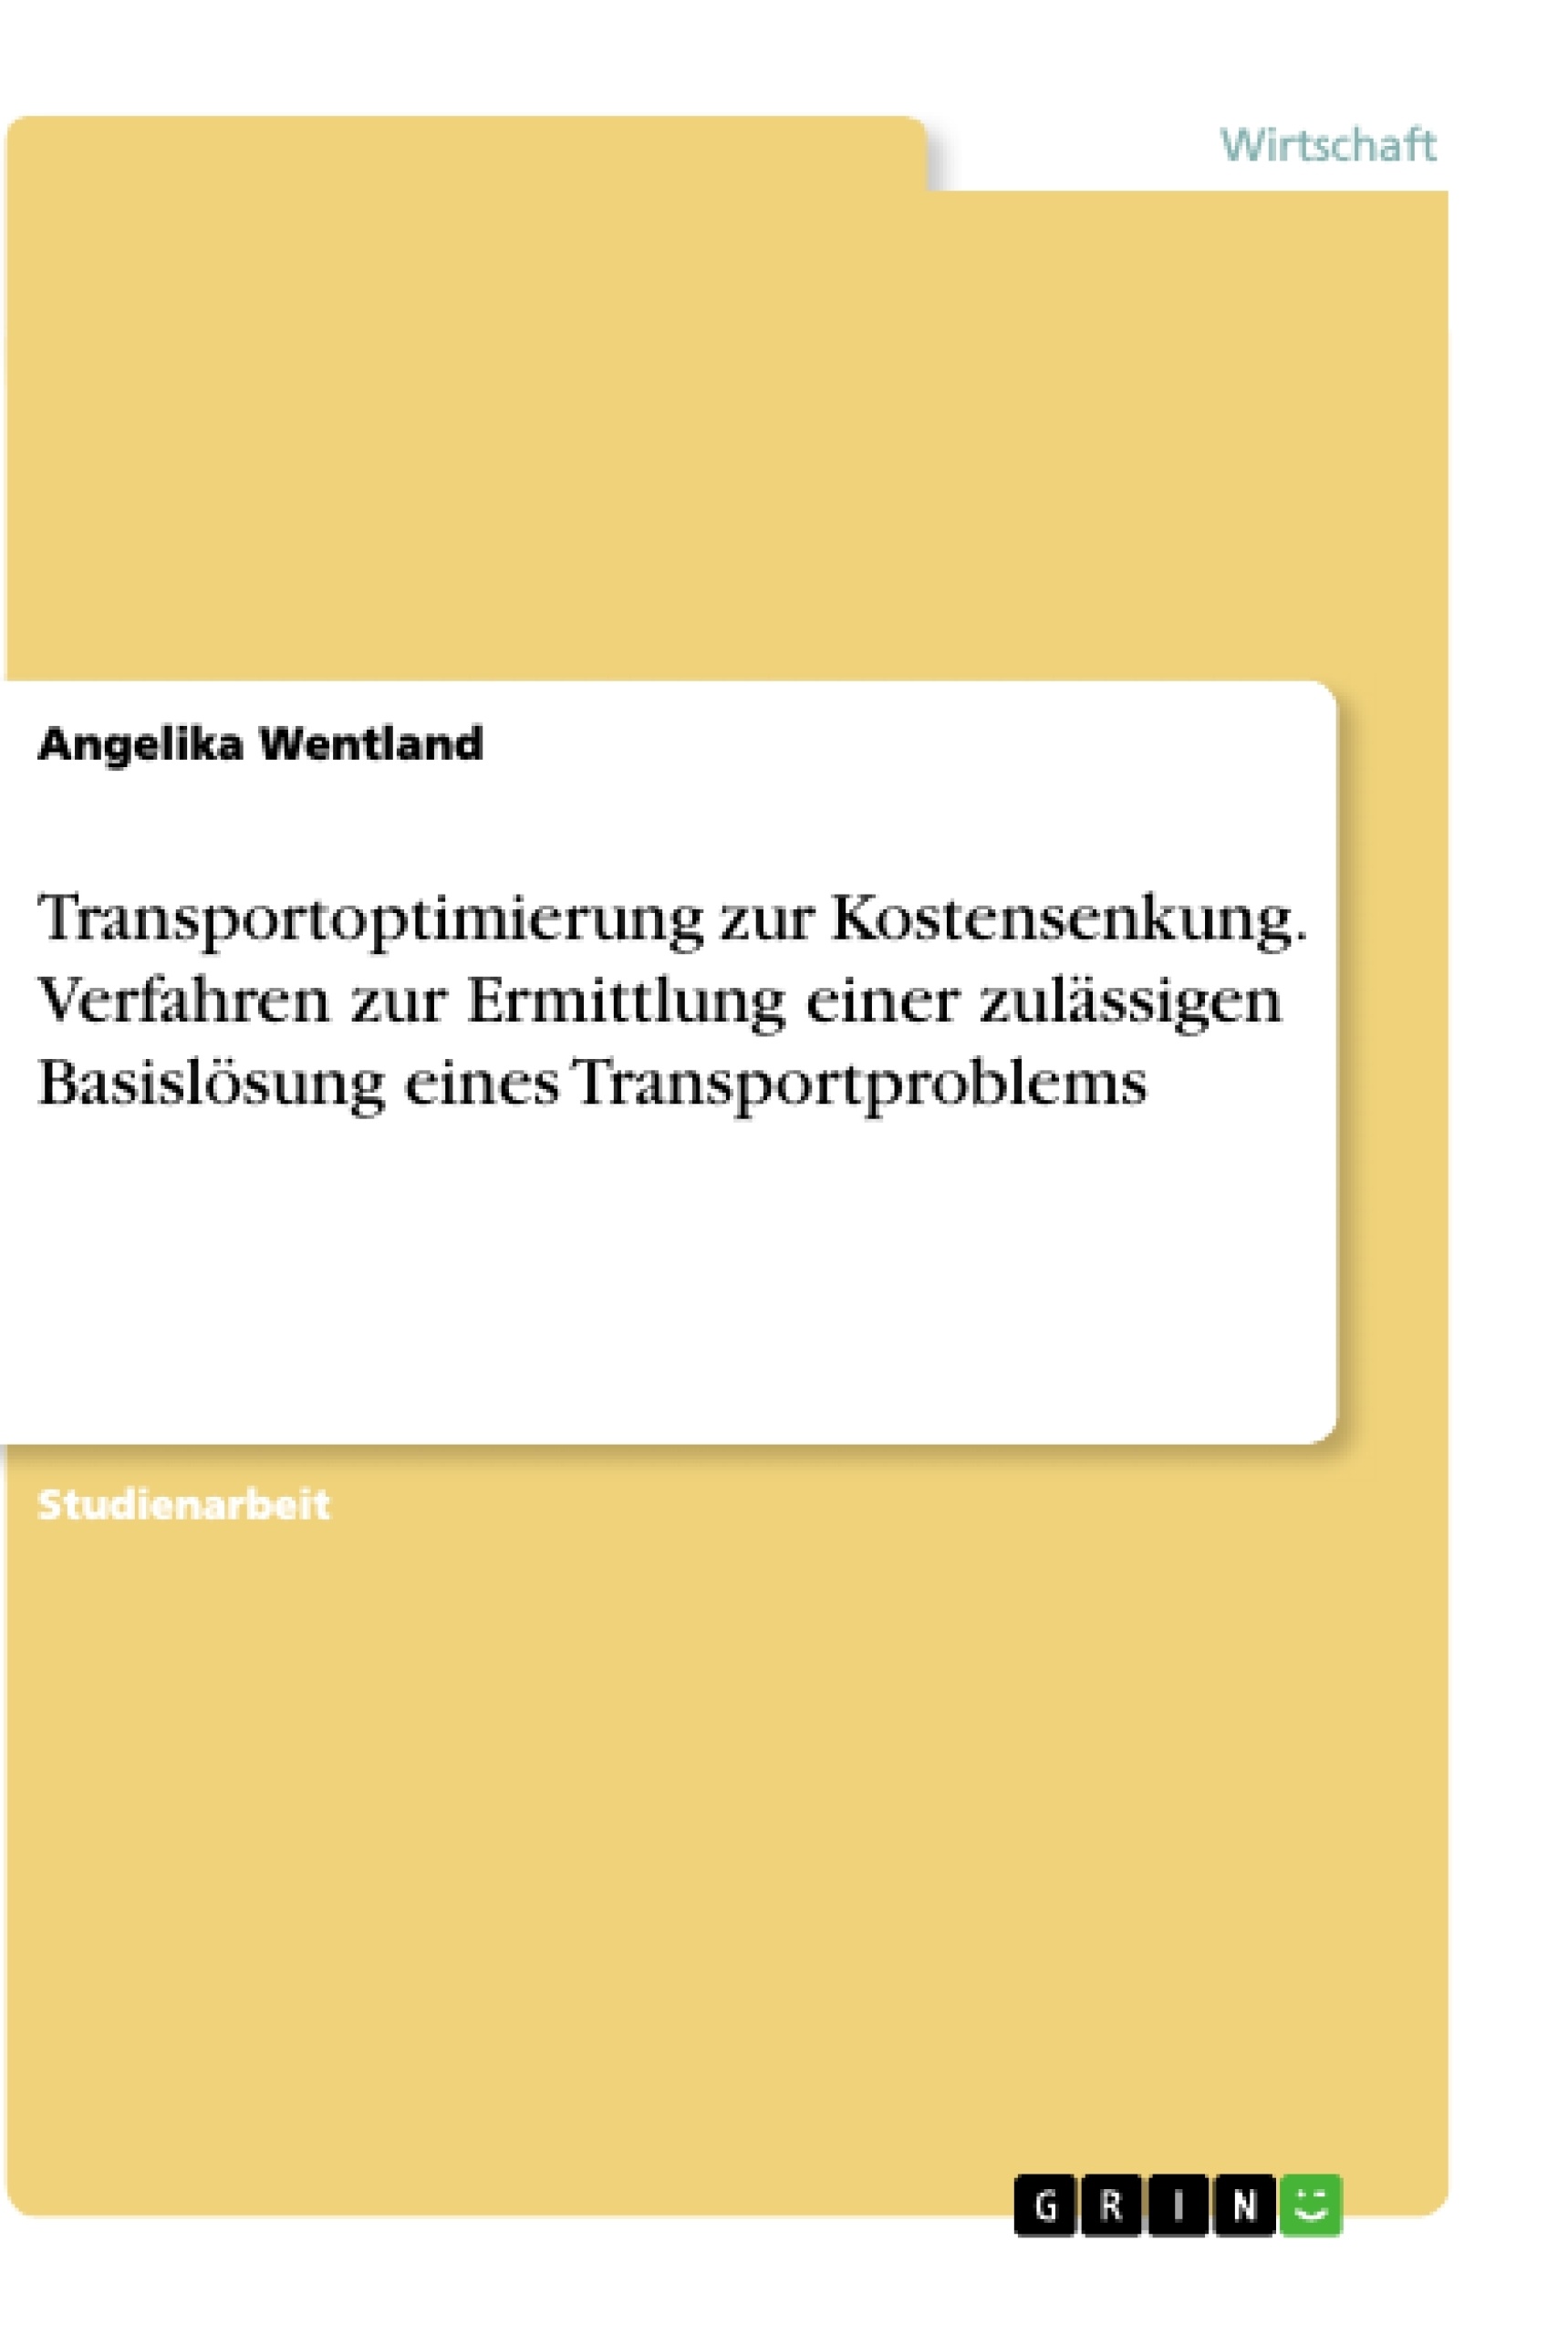 Título: Transportoptimierung zur Kostensenkung. Verfahren zur Ermittlung einer zulässigen Basislösung eines Transportproblems